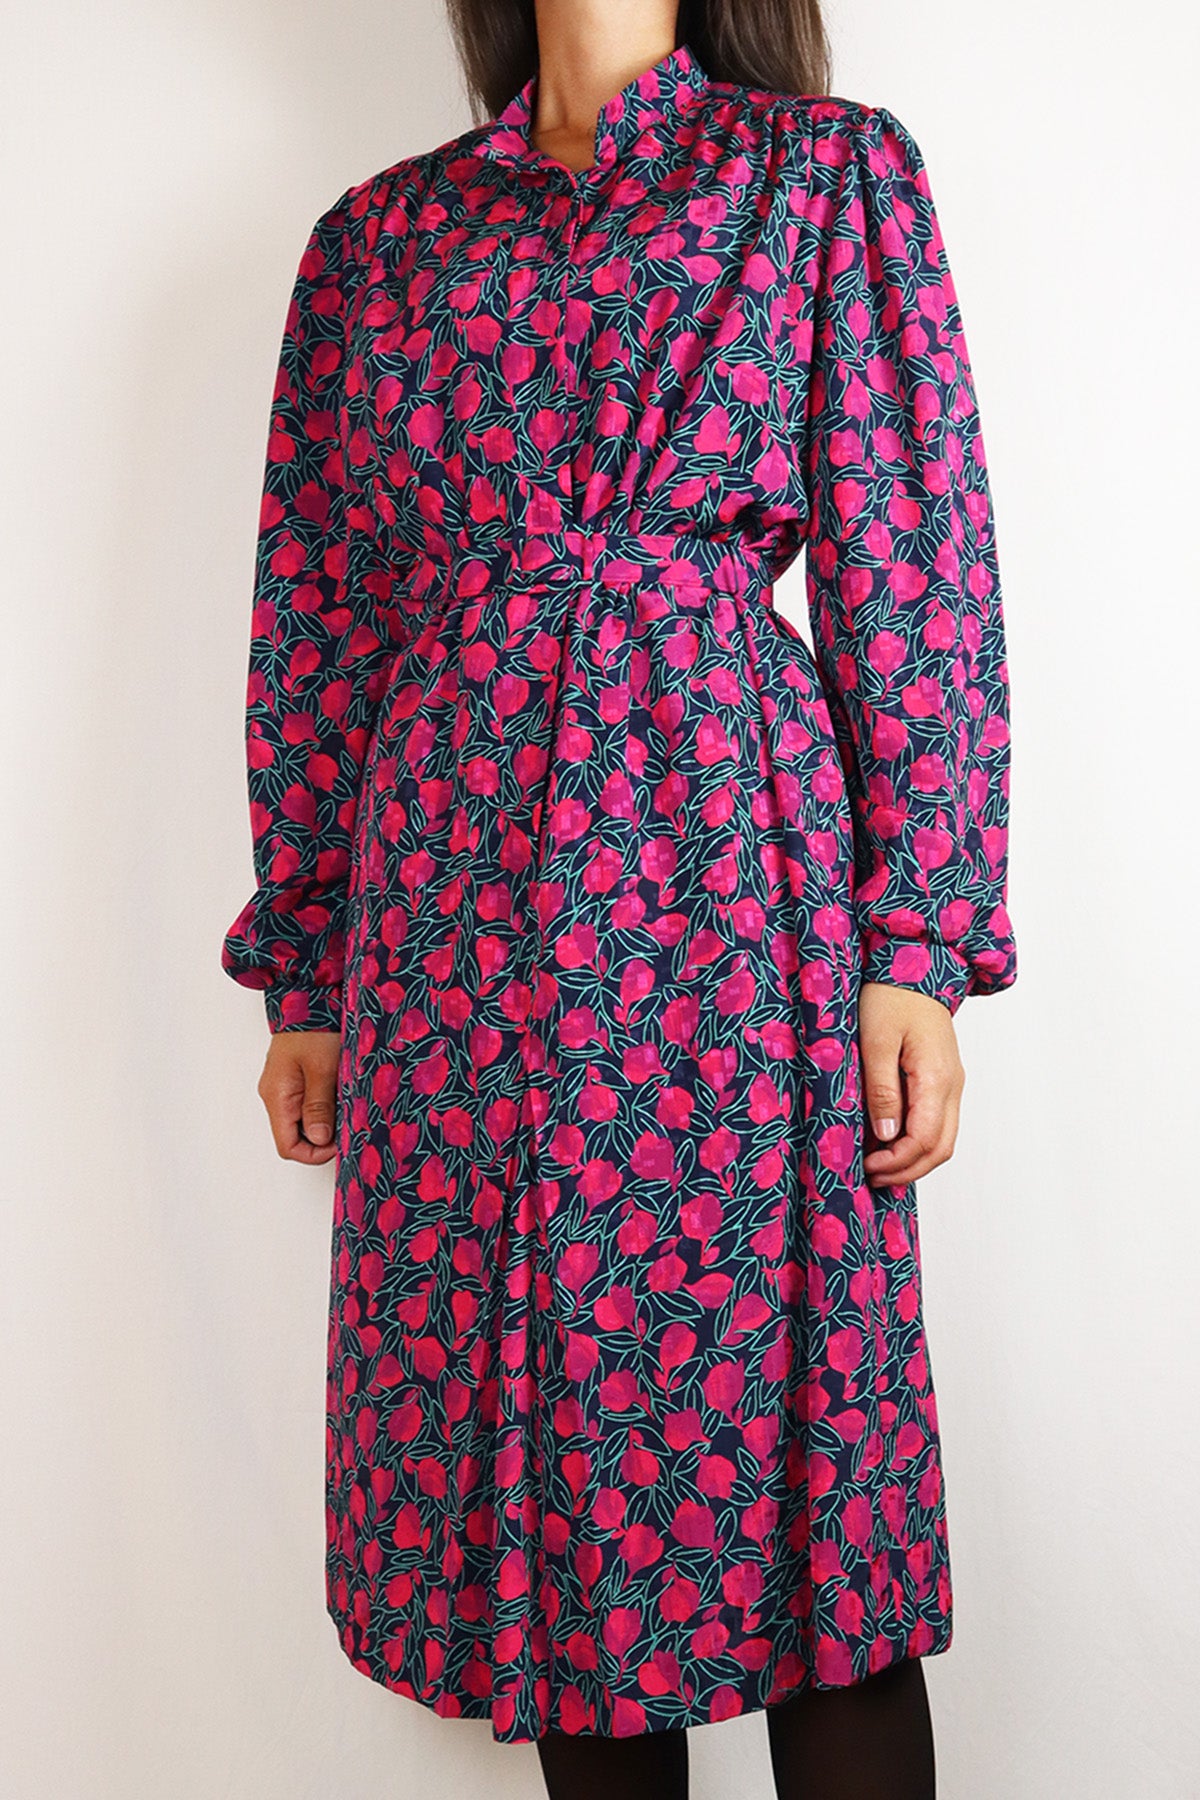 Kleid Vintage Blumen Pink ( Gr. S/M )